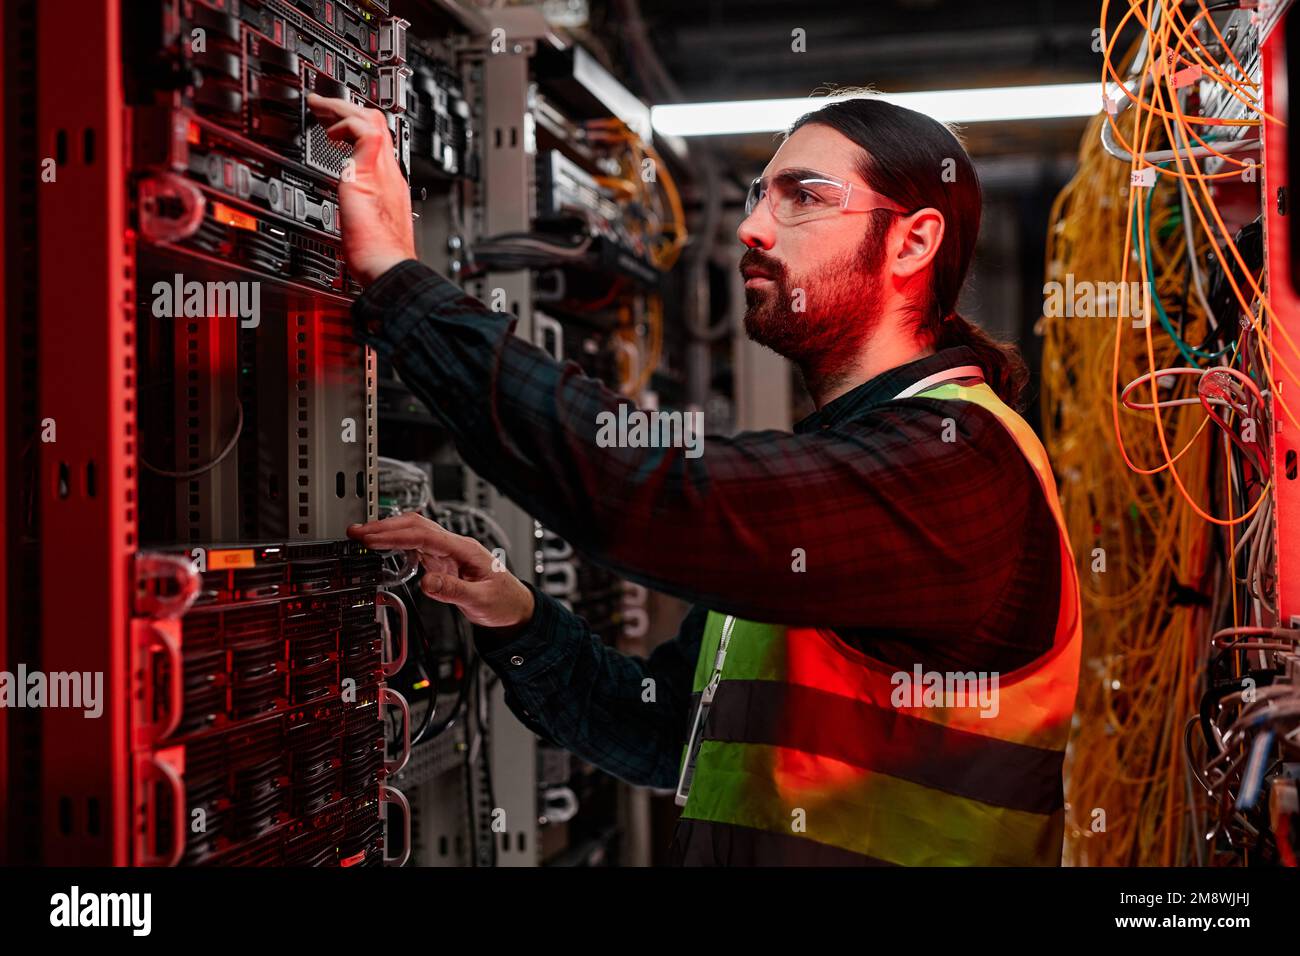 Seitenansicht eines bärtigen Netzwerktechnikers, der Server inspiziert und Wartungsarbeiten im Rechenzentrum durchführt, beleuchtet durch rotes Neonlicht Stockfoto